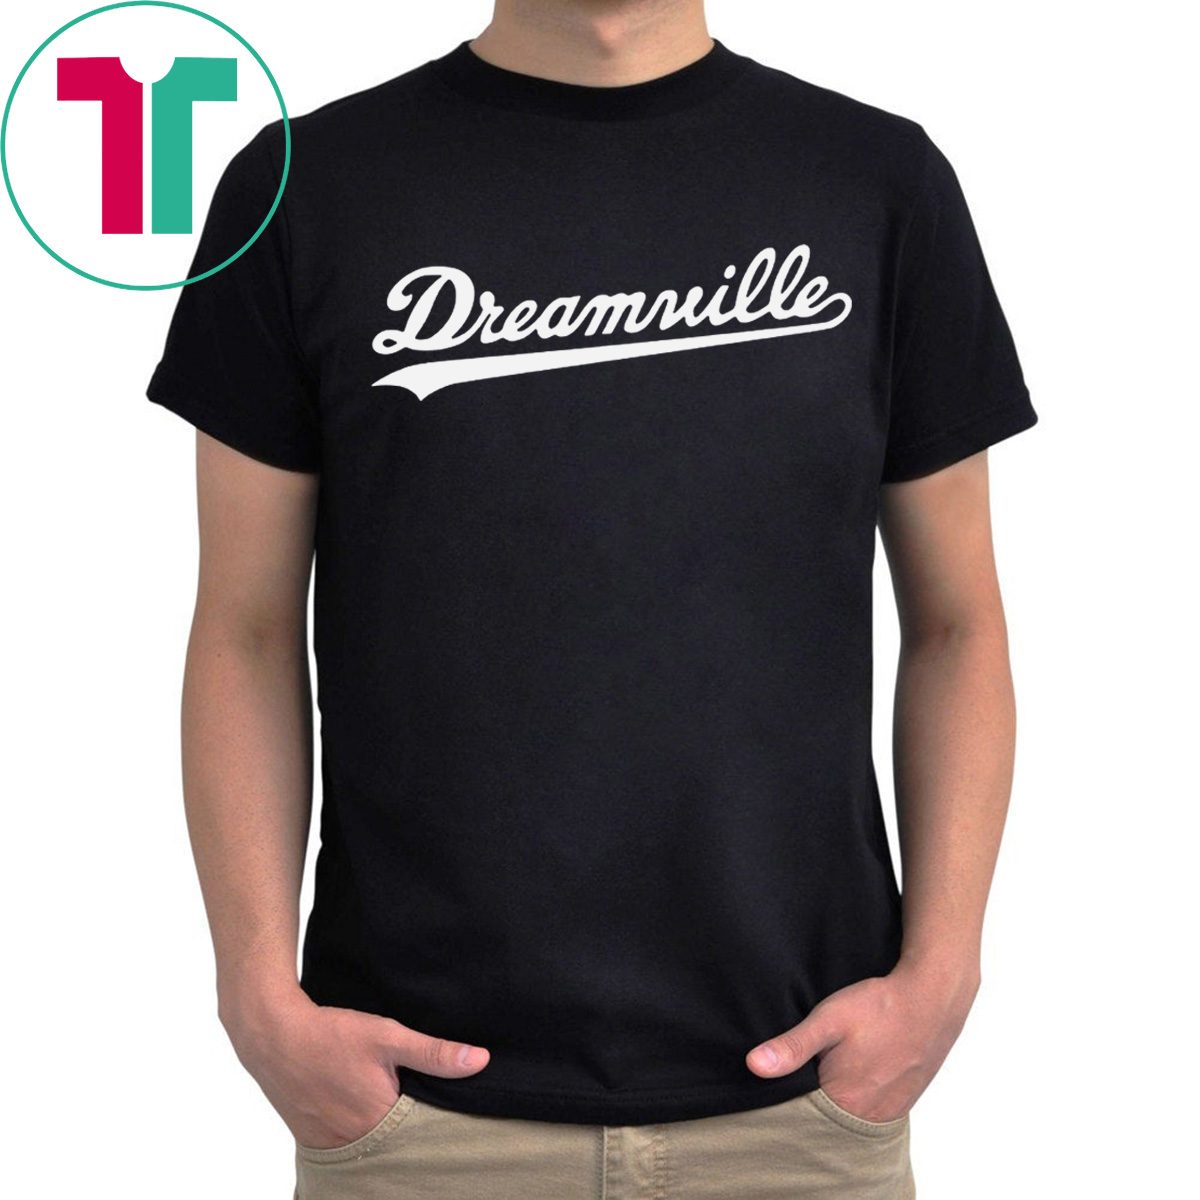 Dreamville Shirt Reviewshirts Office